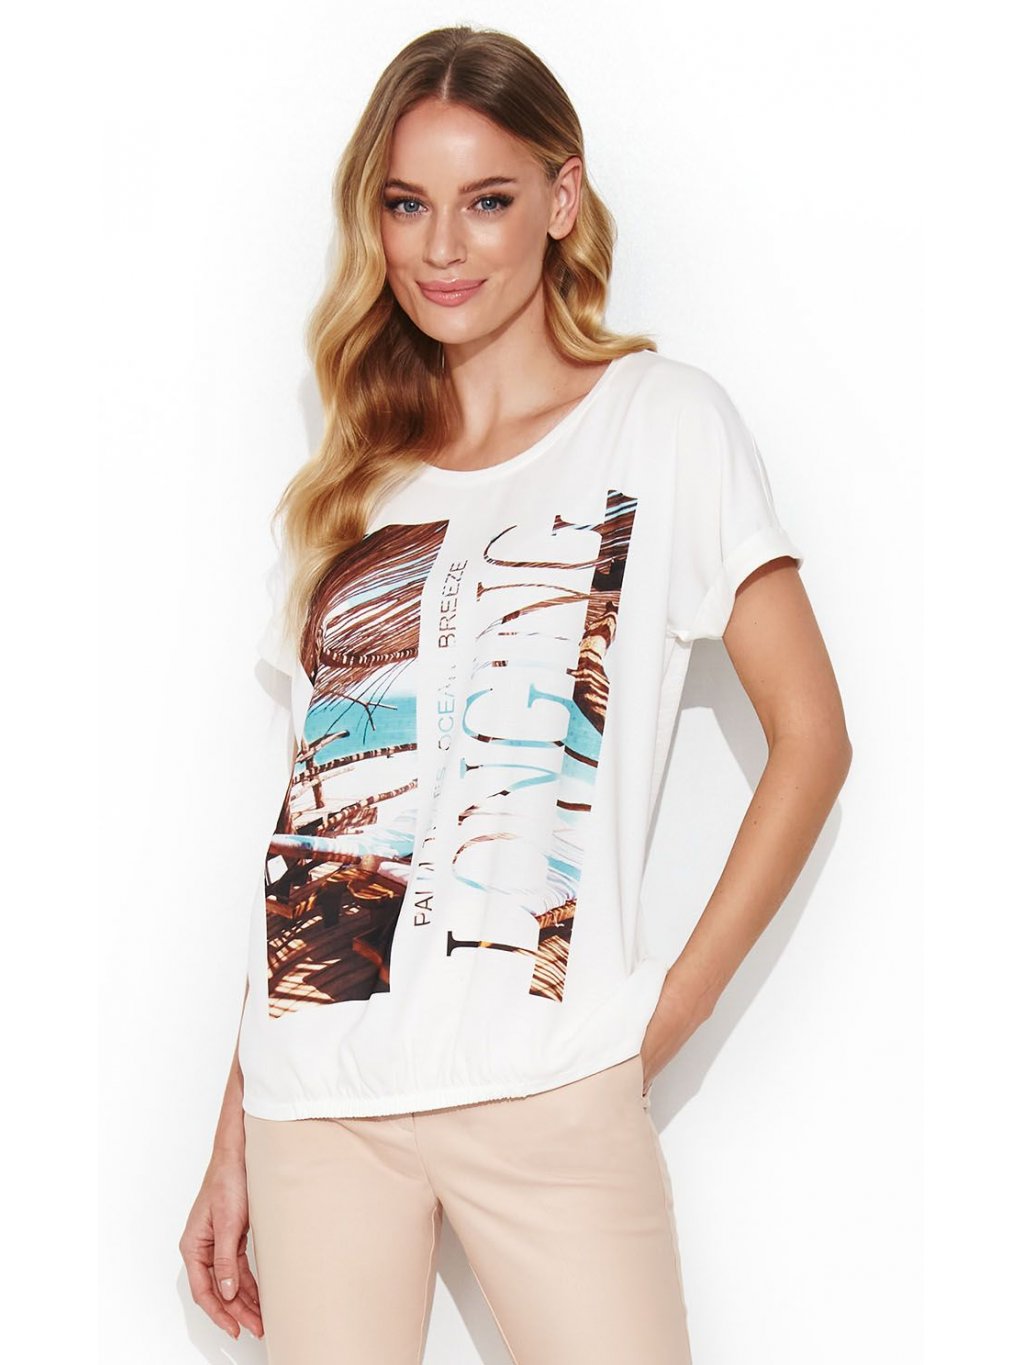 Tričko Zaps Majrita jemné bílé prodloužené tropický print